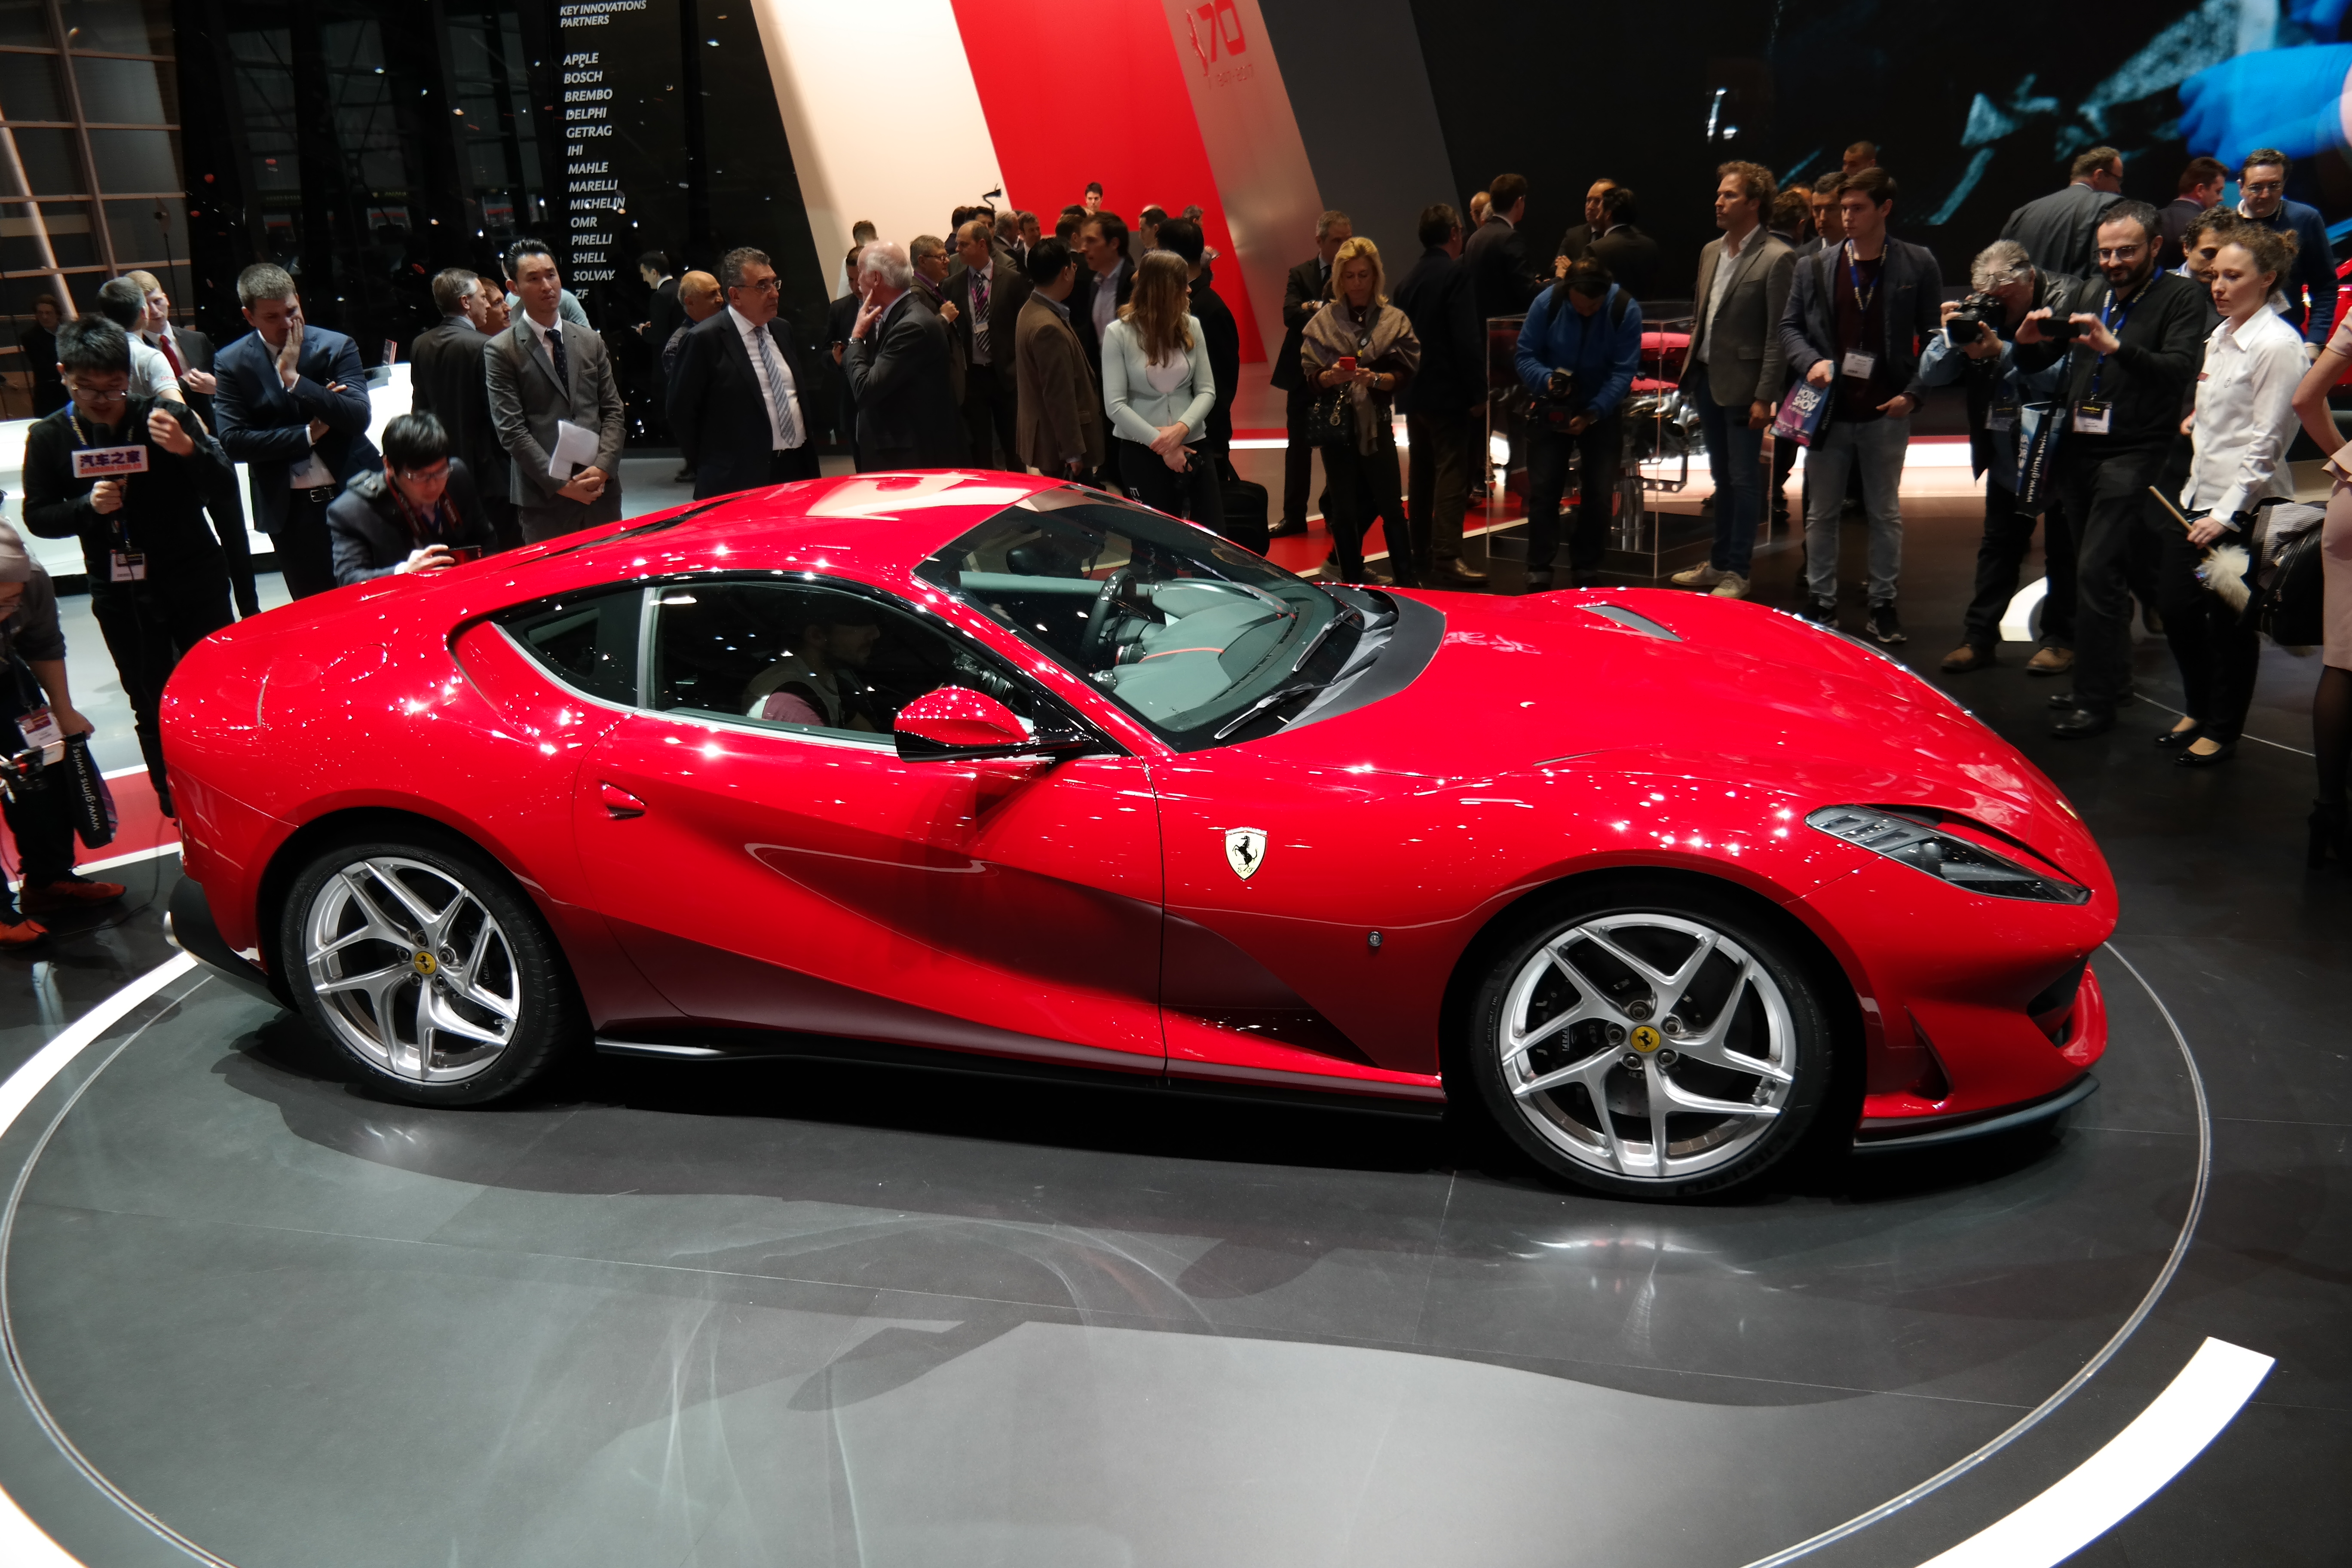 Ferrari Portofino mod specifications